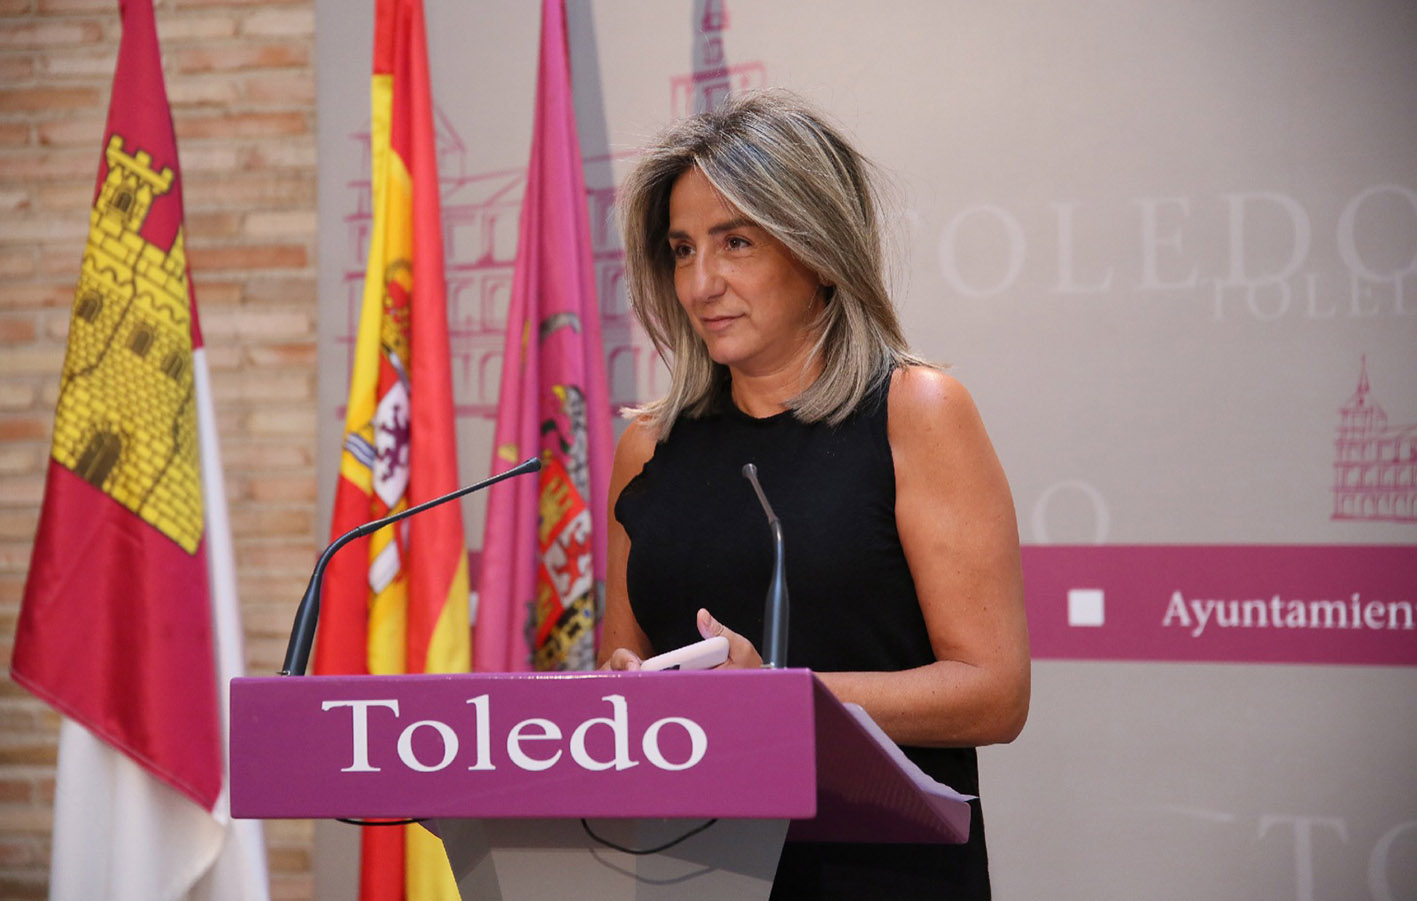 Milagros Tolón, alcaldesa de Toledo, ha mostrado su satisfacción porque el Ministerio de Hacienda ha aprobado el Plan Económico Financiero del Ayuntamiento.